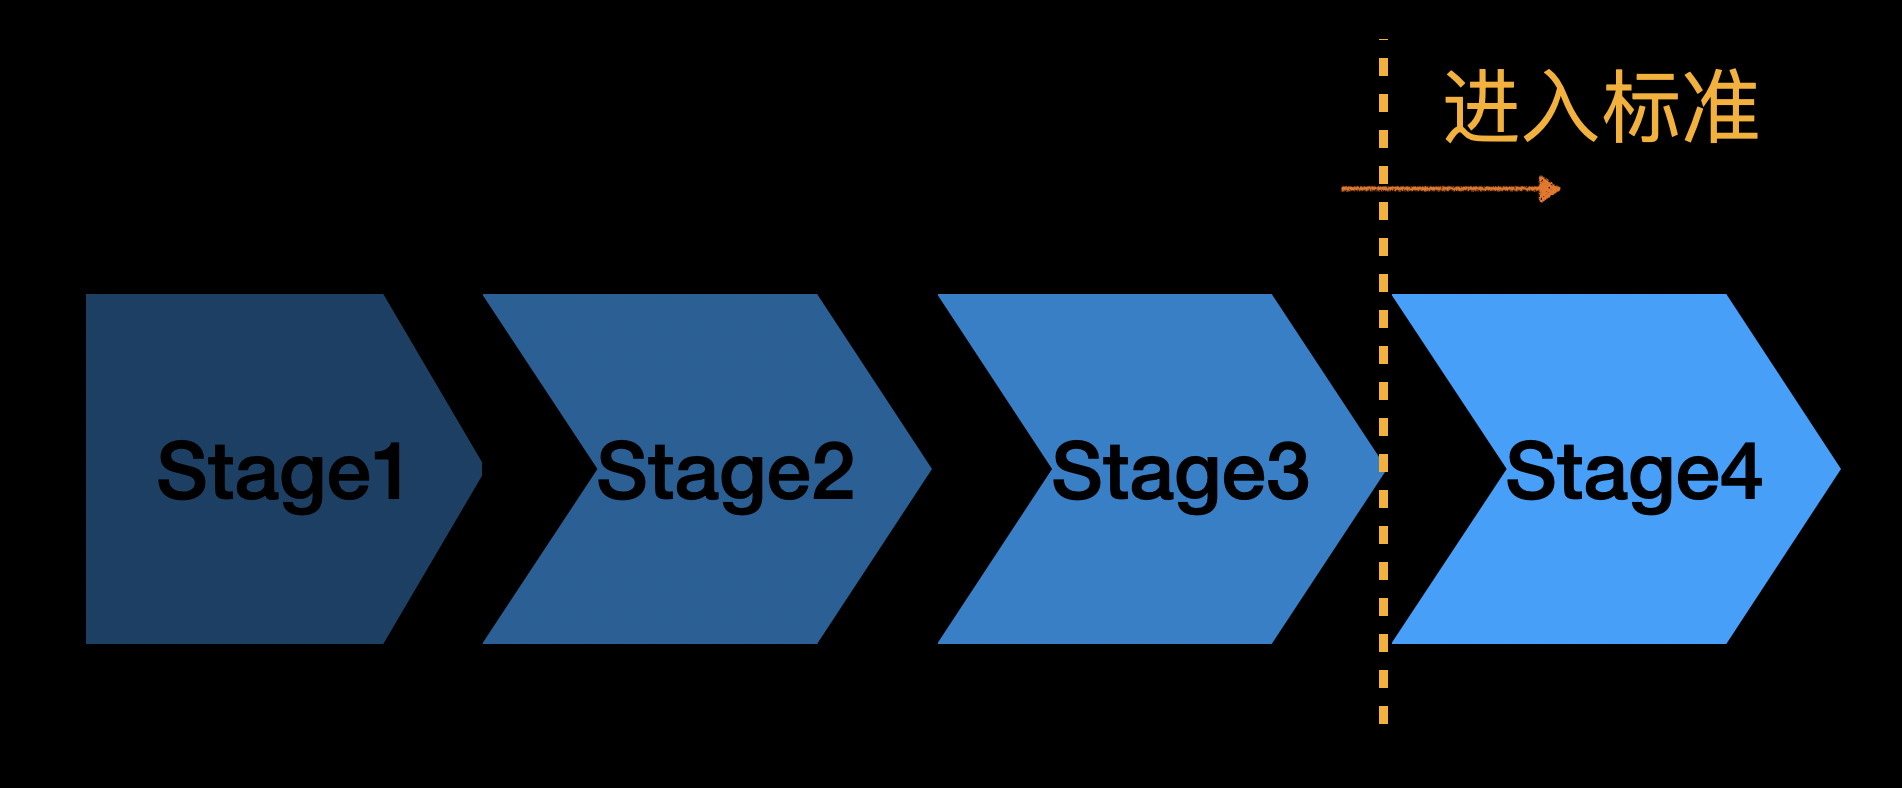 stage-summary